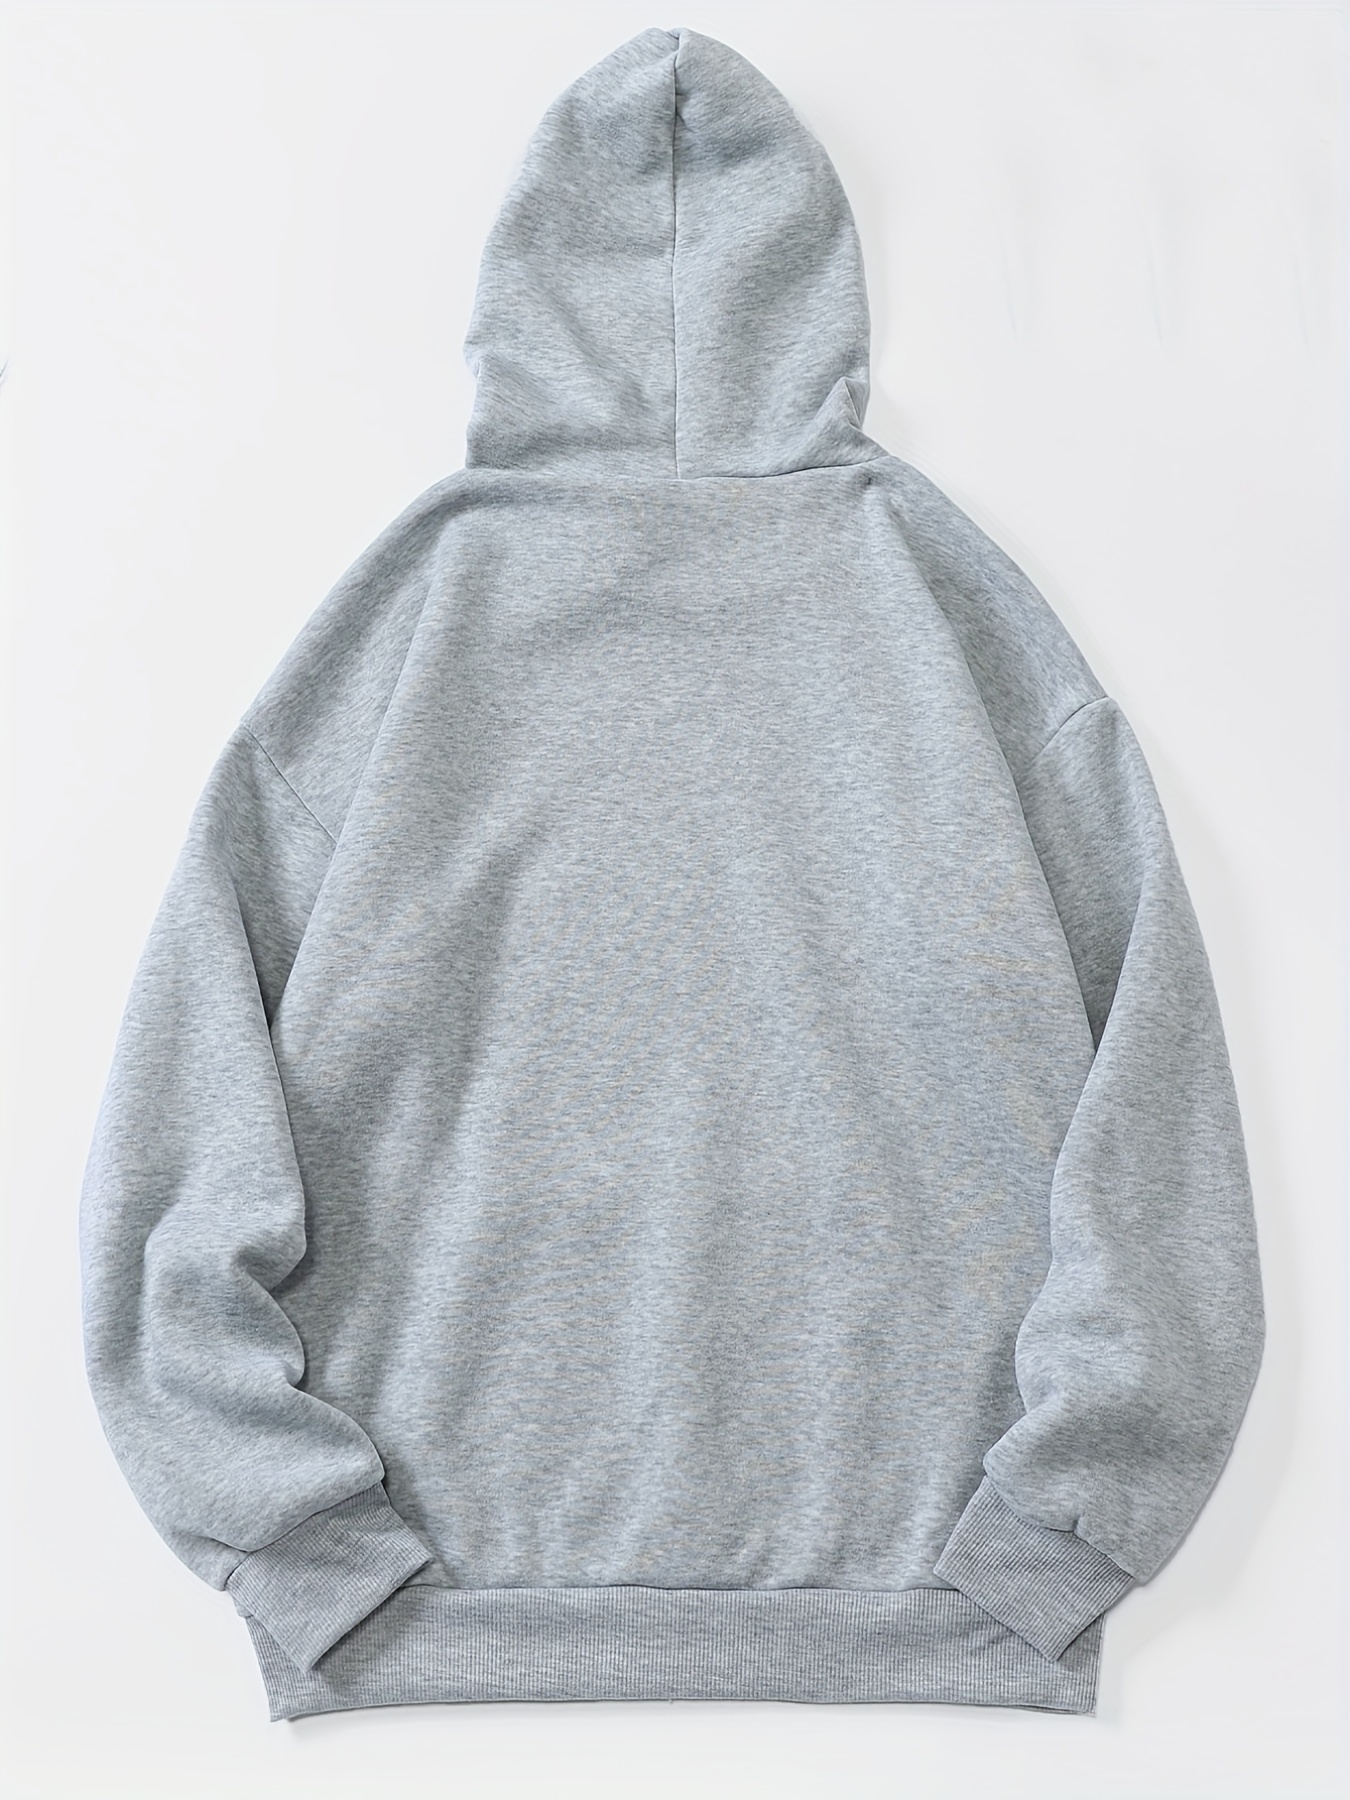 letter print kangaroo pocket hoodie casual long sleeve drawstring hoodies sweatshirt womens clothing details 34